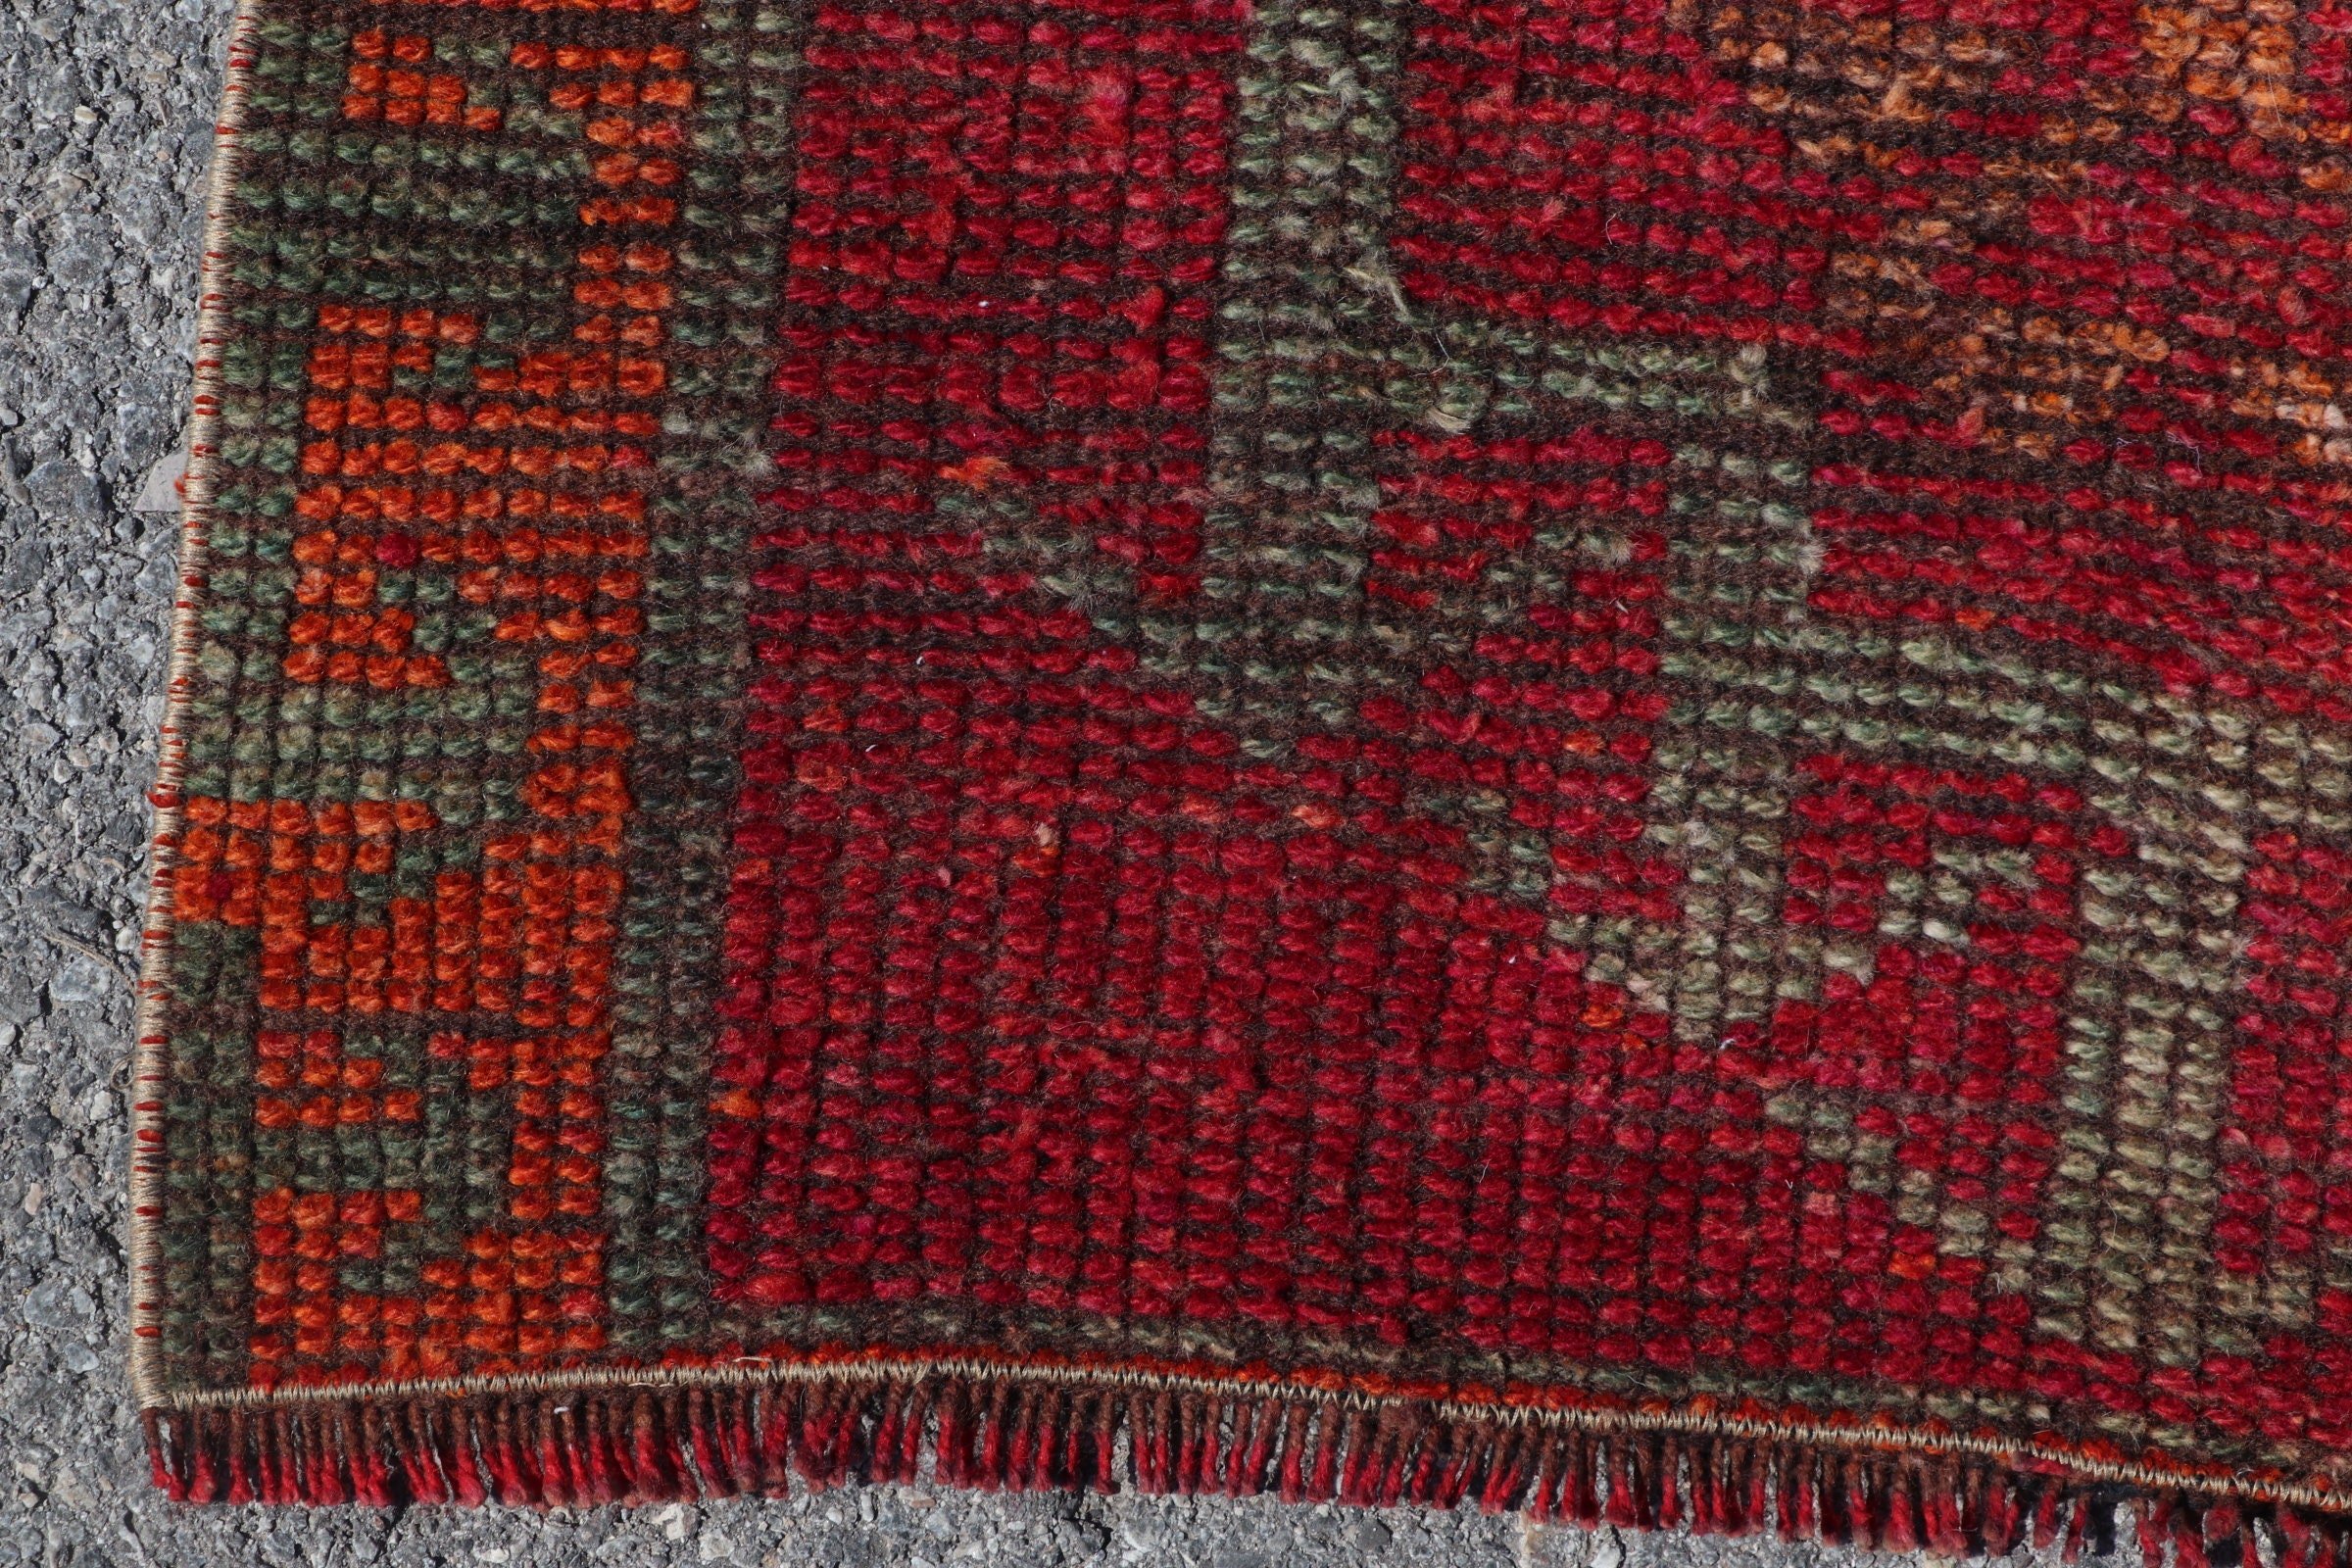 Anatolian Rug, Turkish Rug, Ethnic Rug, Rugs for Runner, Bedroom Rugs, Vintage Rug, Red Floor Rugs, 2.9x11.4 ft Runner Rug, Stair Rug